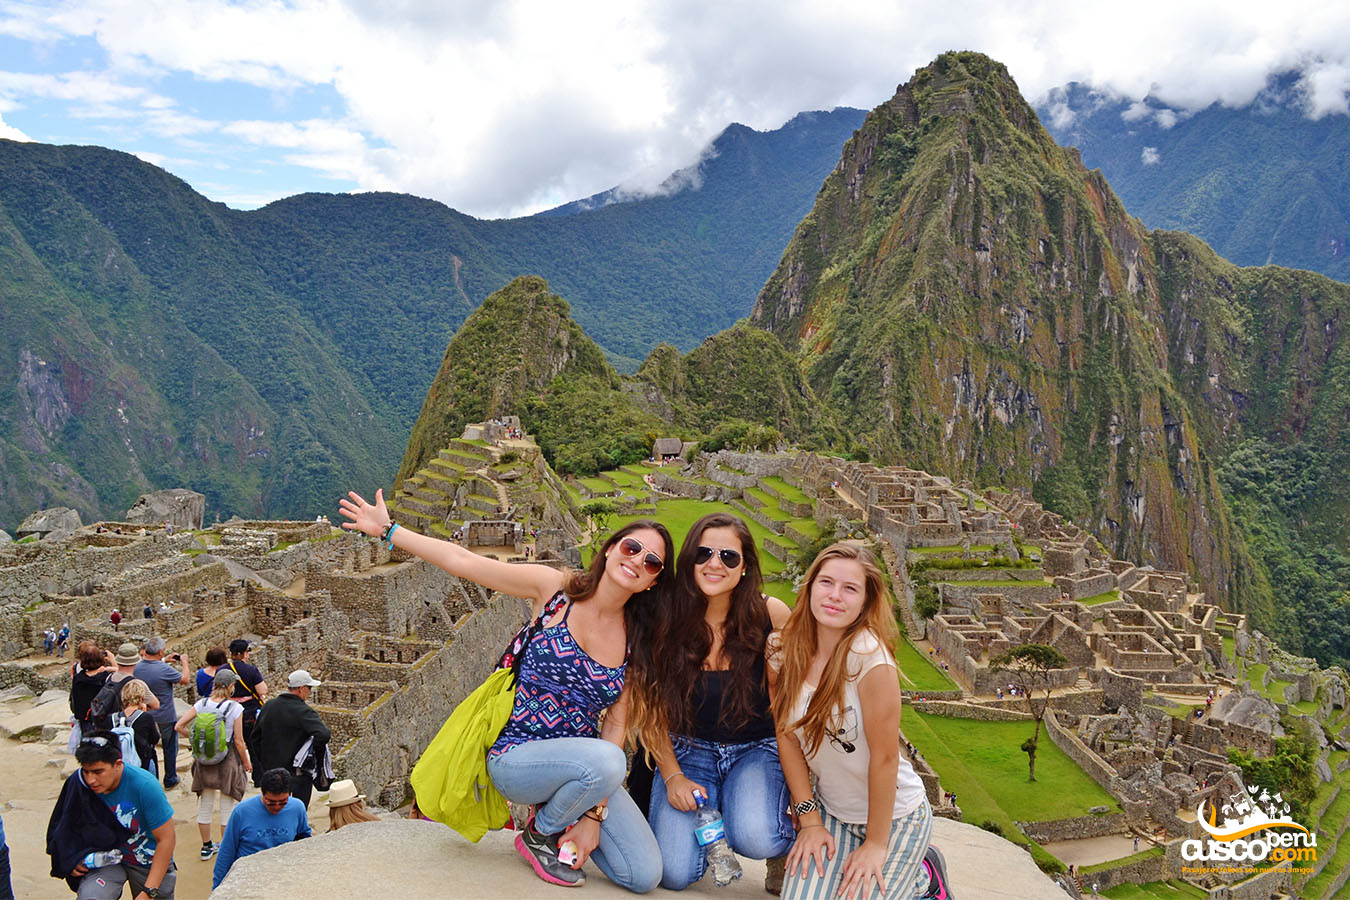  Estudantes na cidadela inca de Machu Picchu. Fonte: CuscoPeru.com